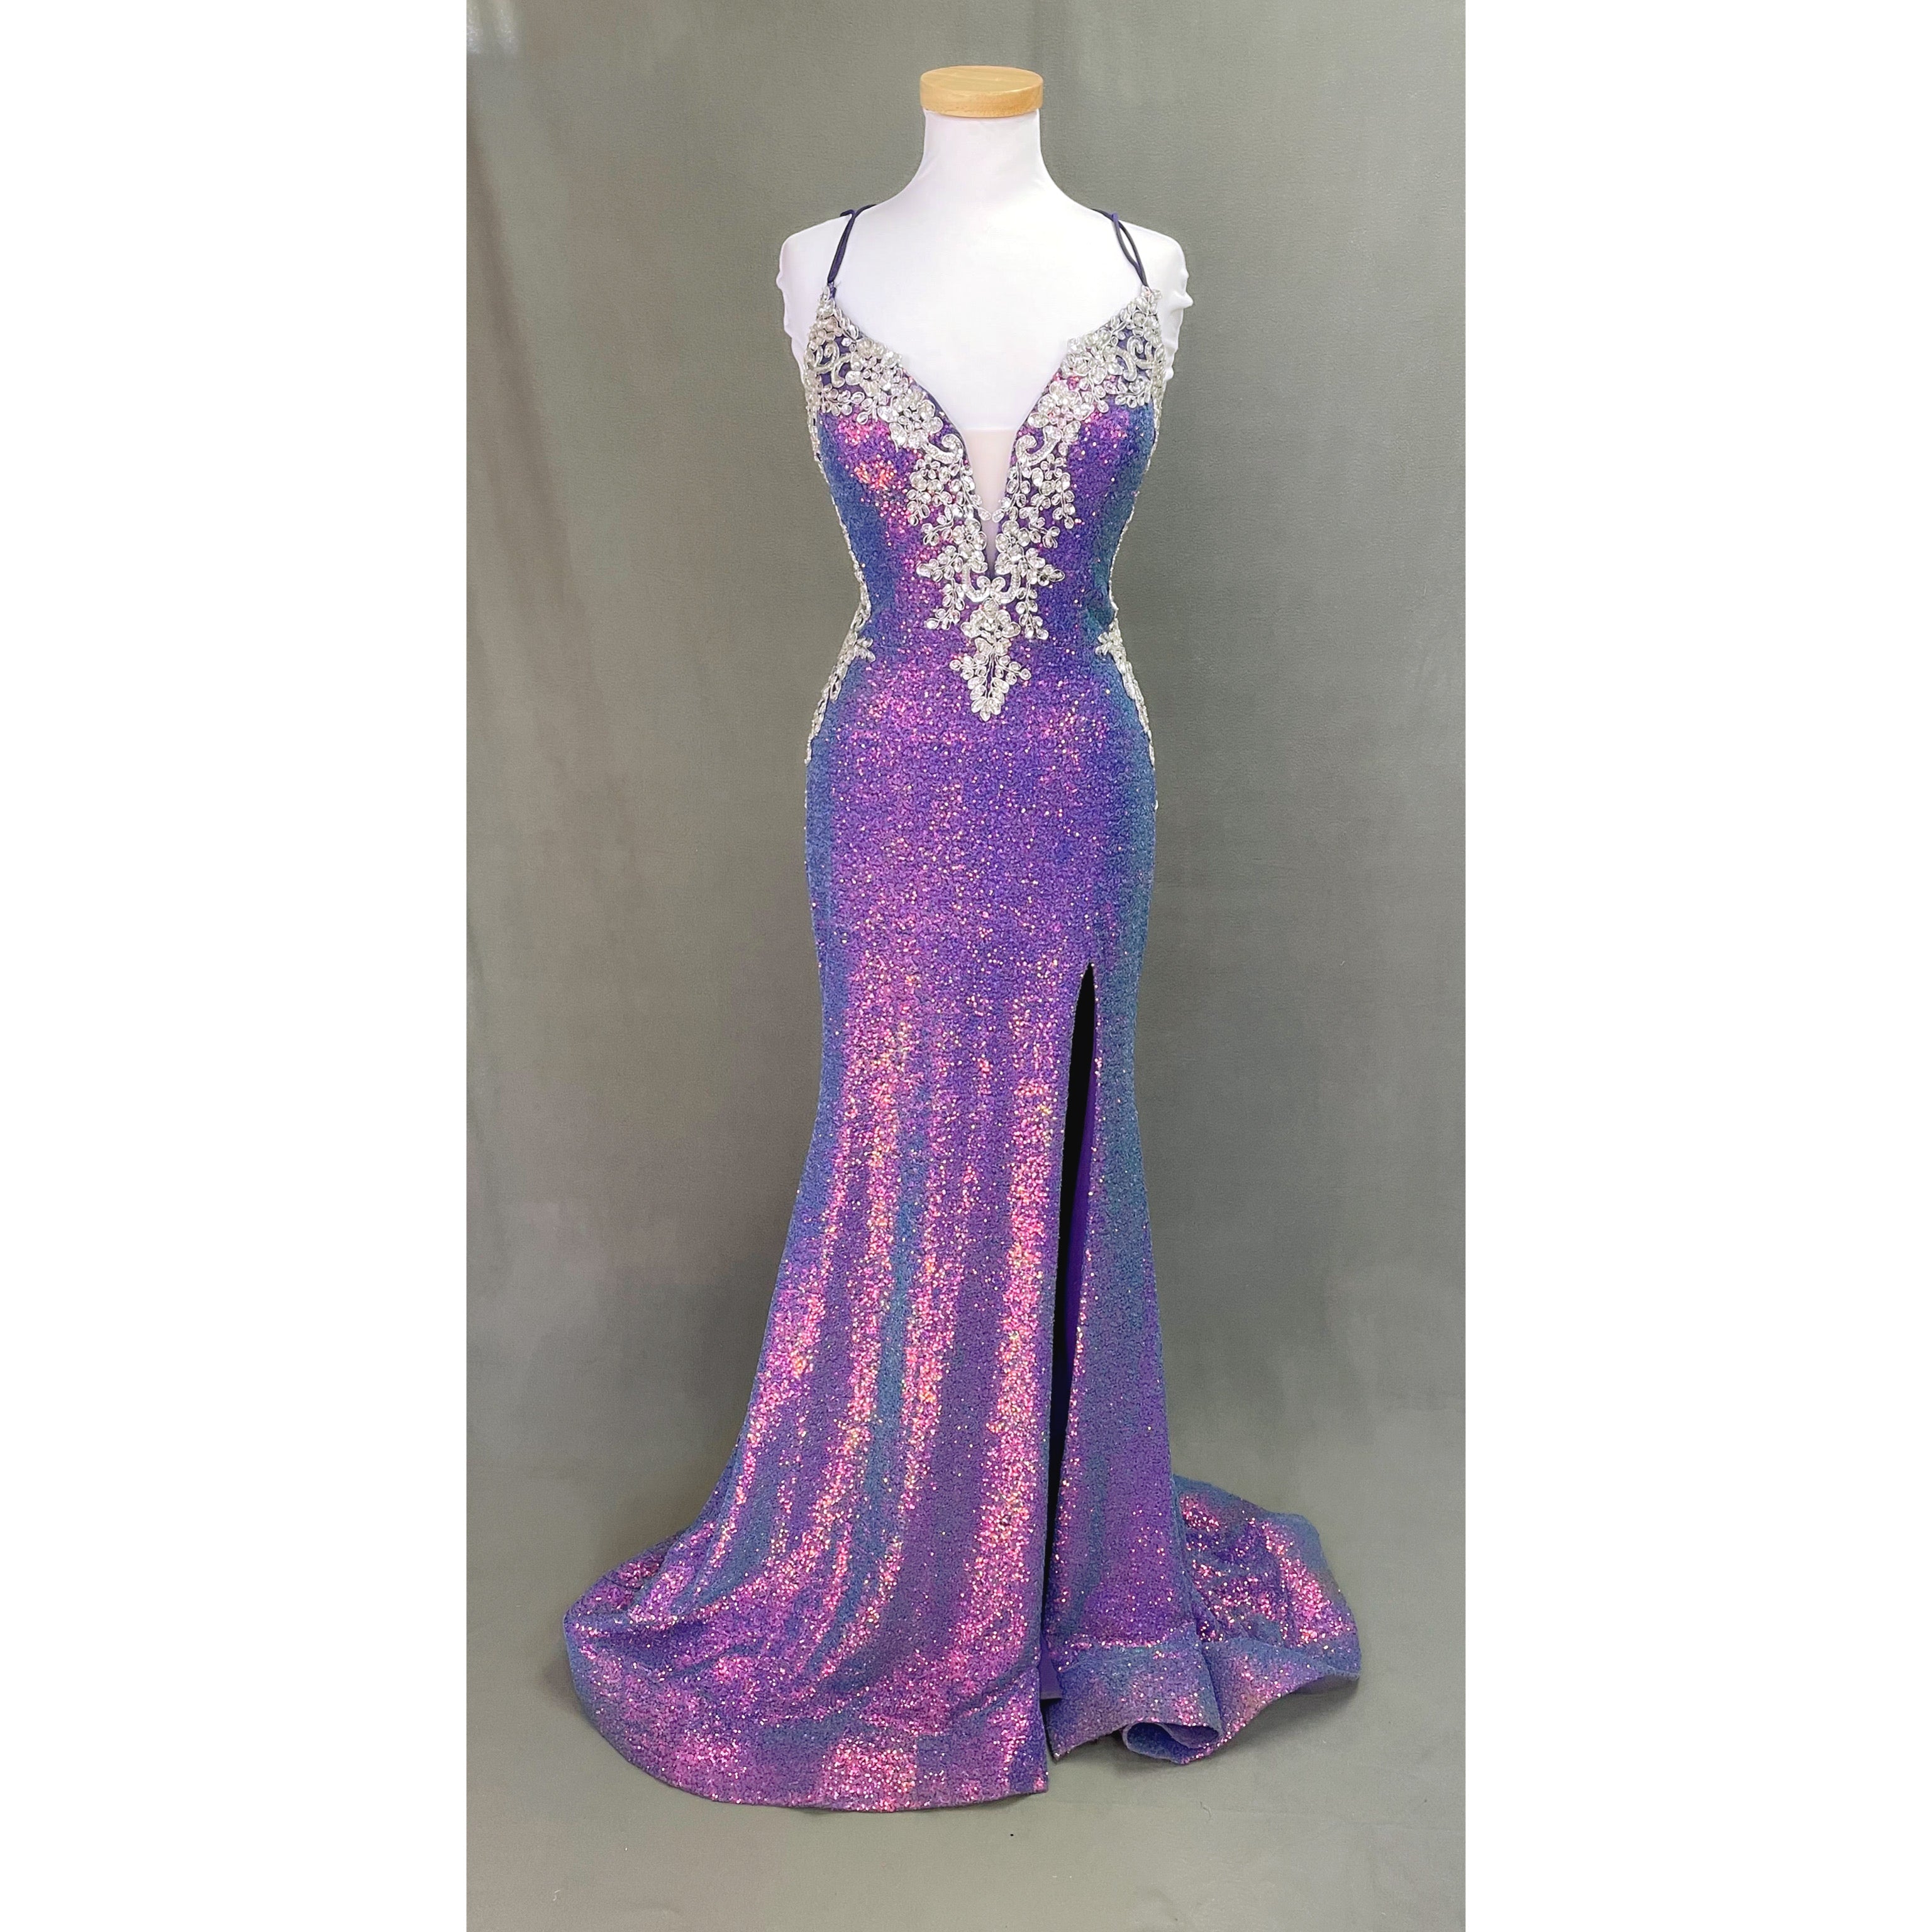 2 Cute purple dress, size 10